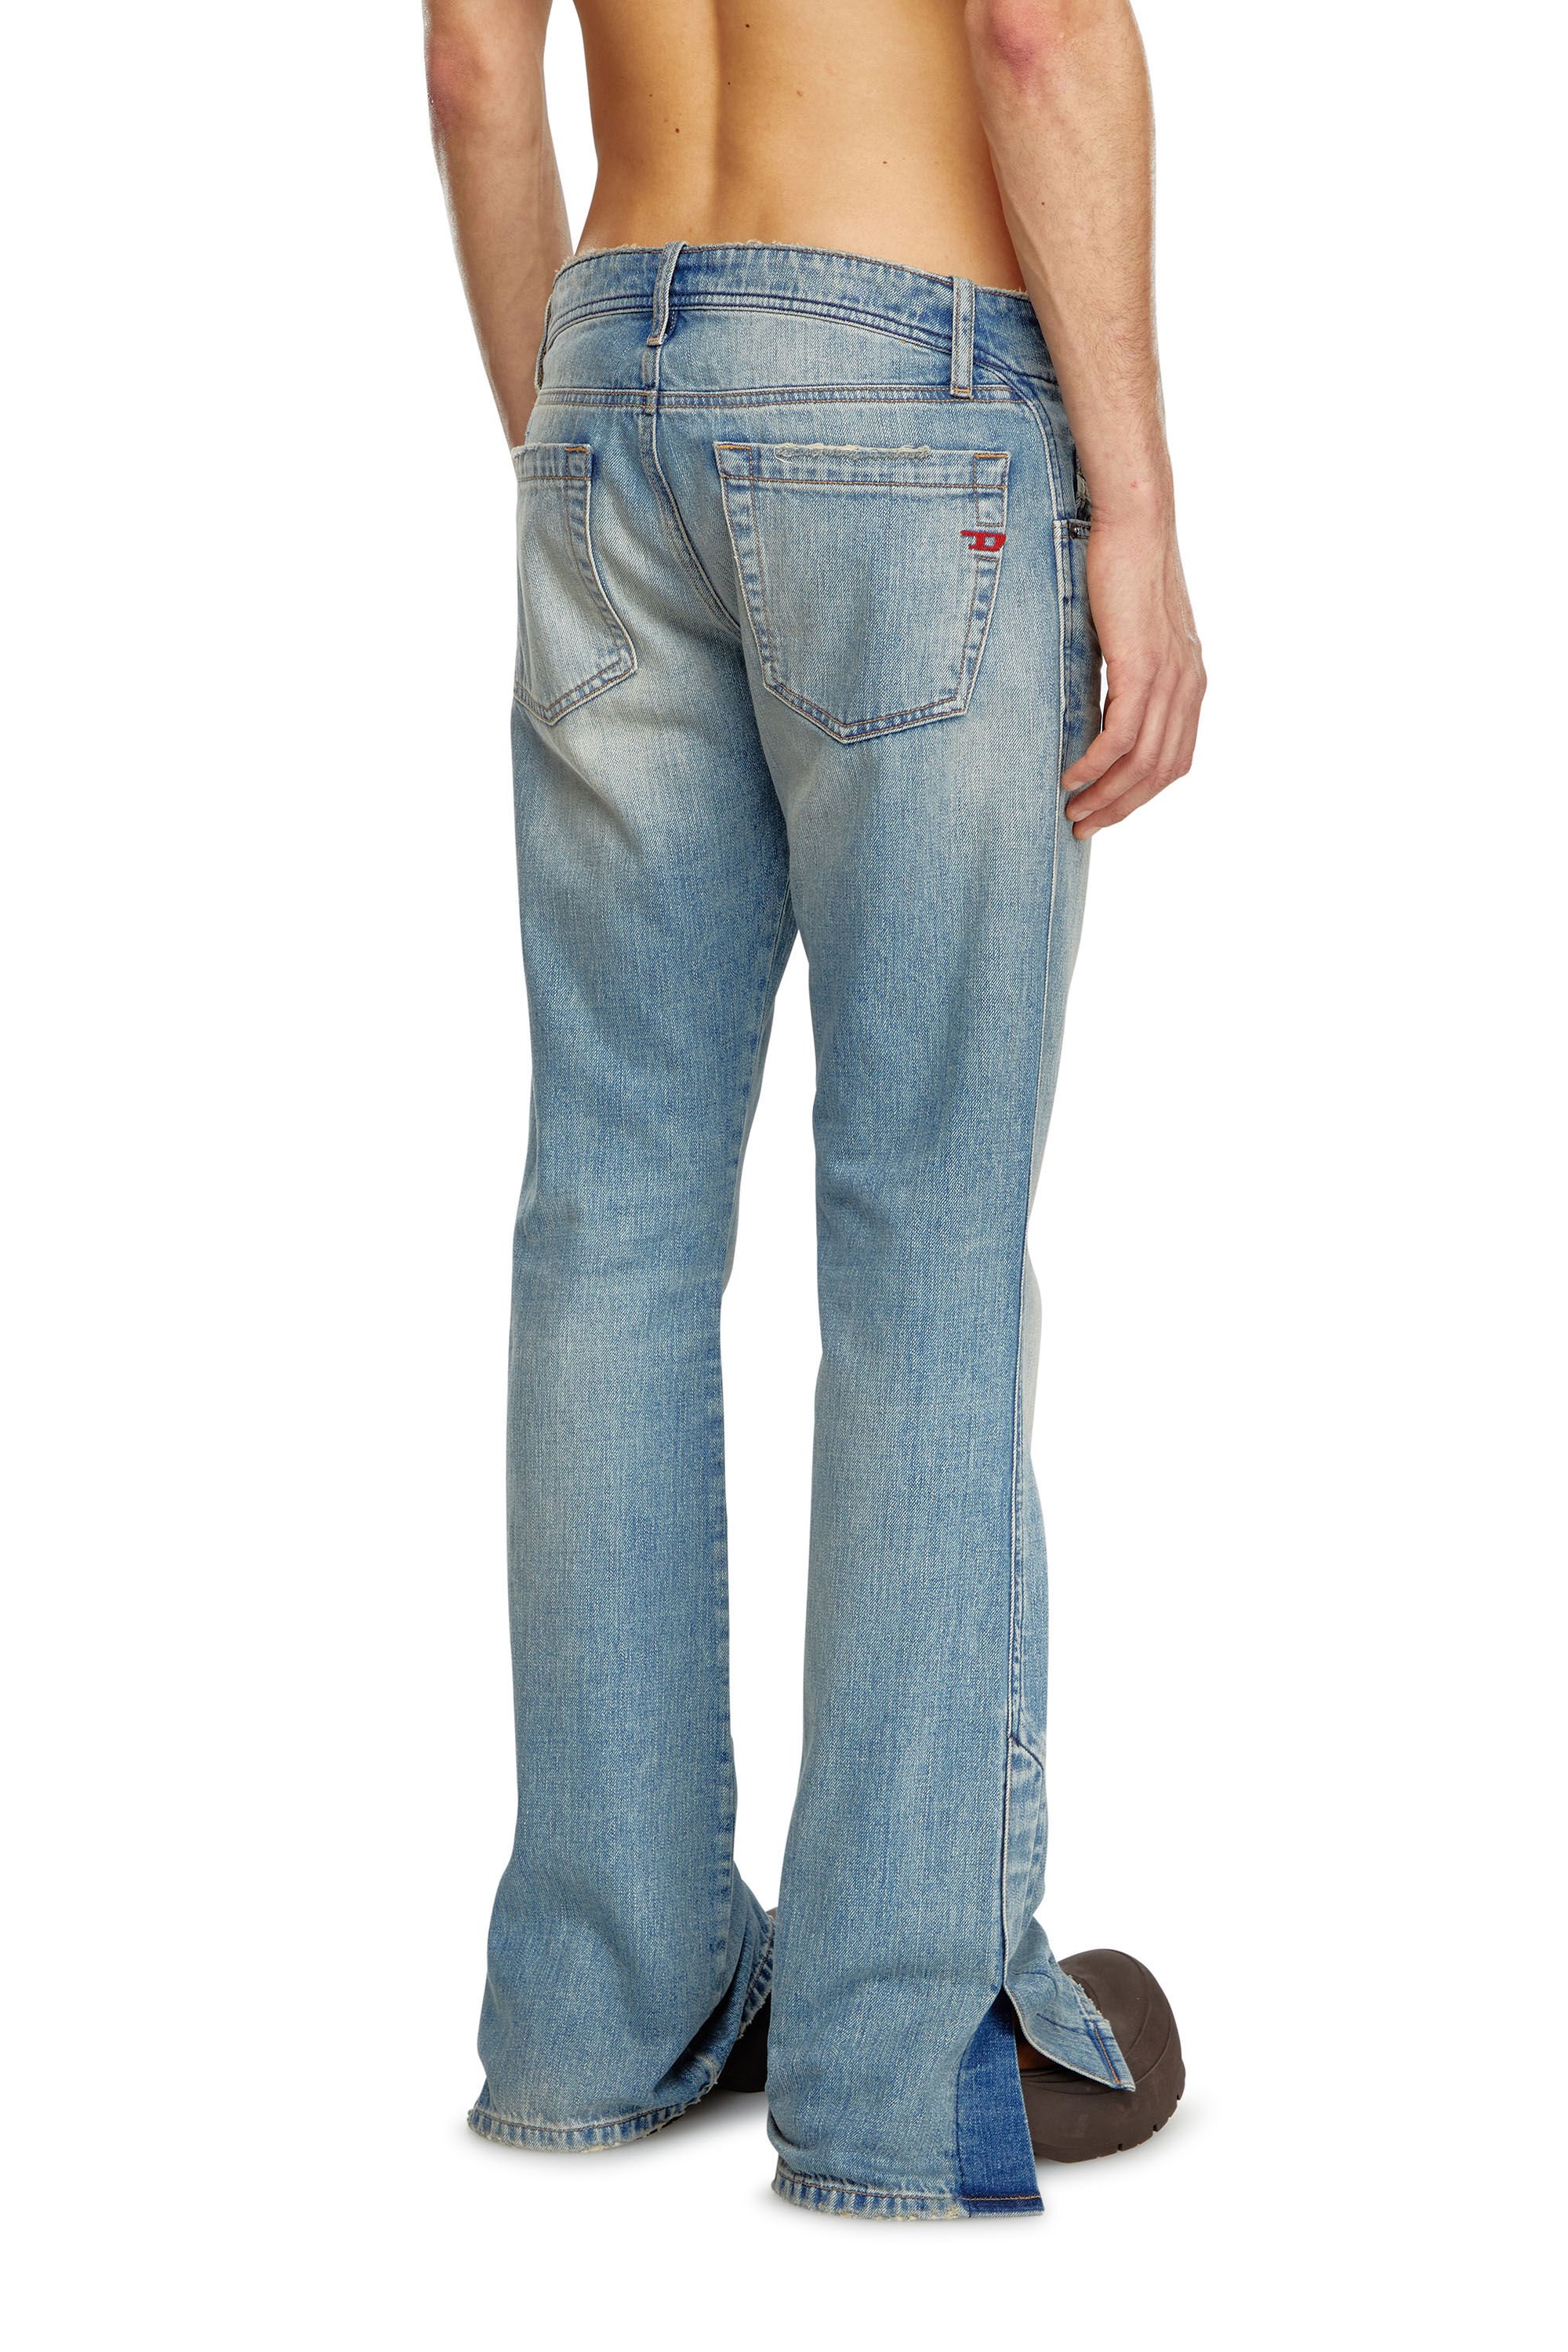 Diesel - Bootcut Jeans D-Backler 0GRDN, Hombre Bootcut Jeans - D-Backler in Azul marino - Image 4